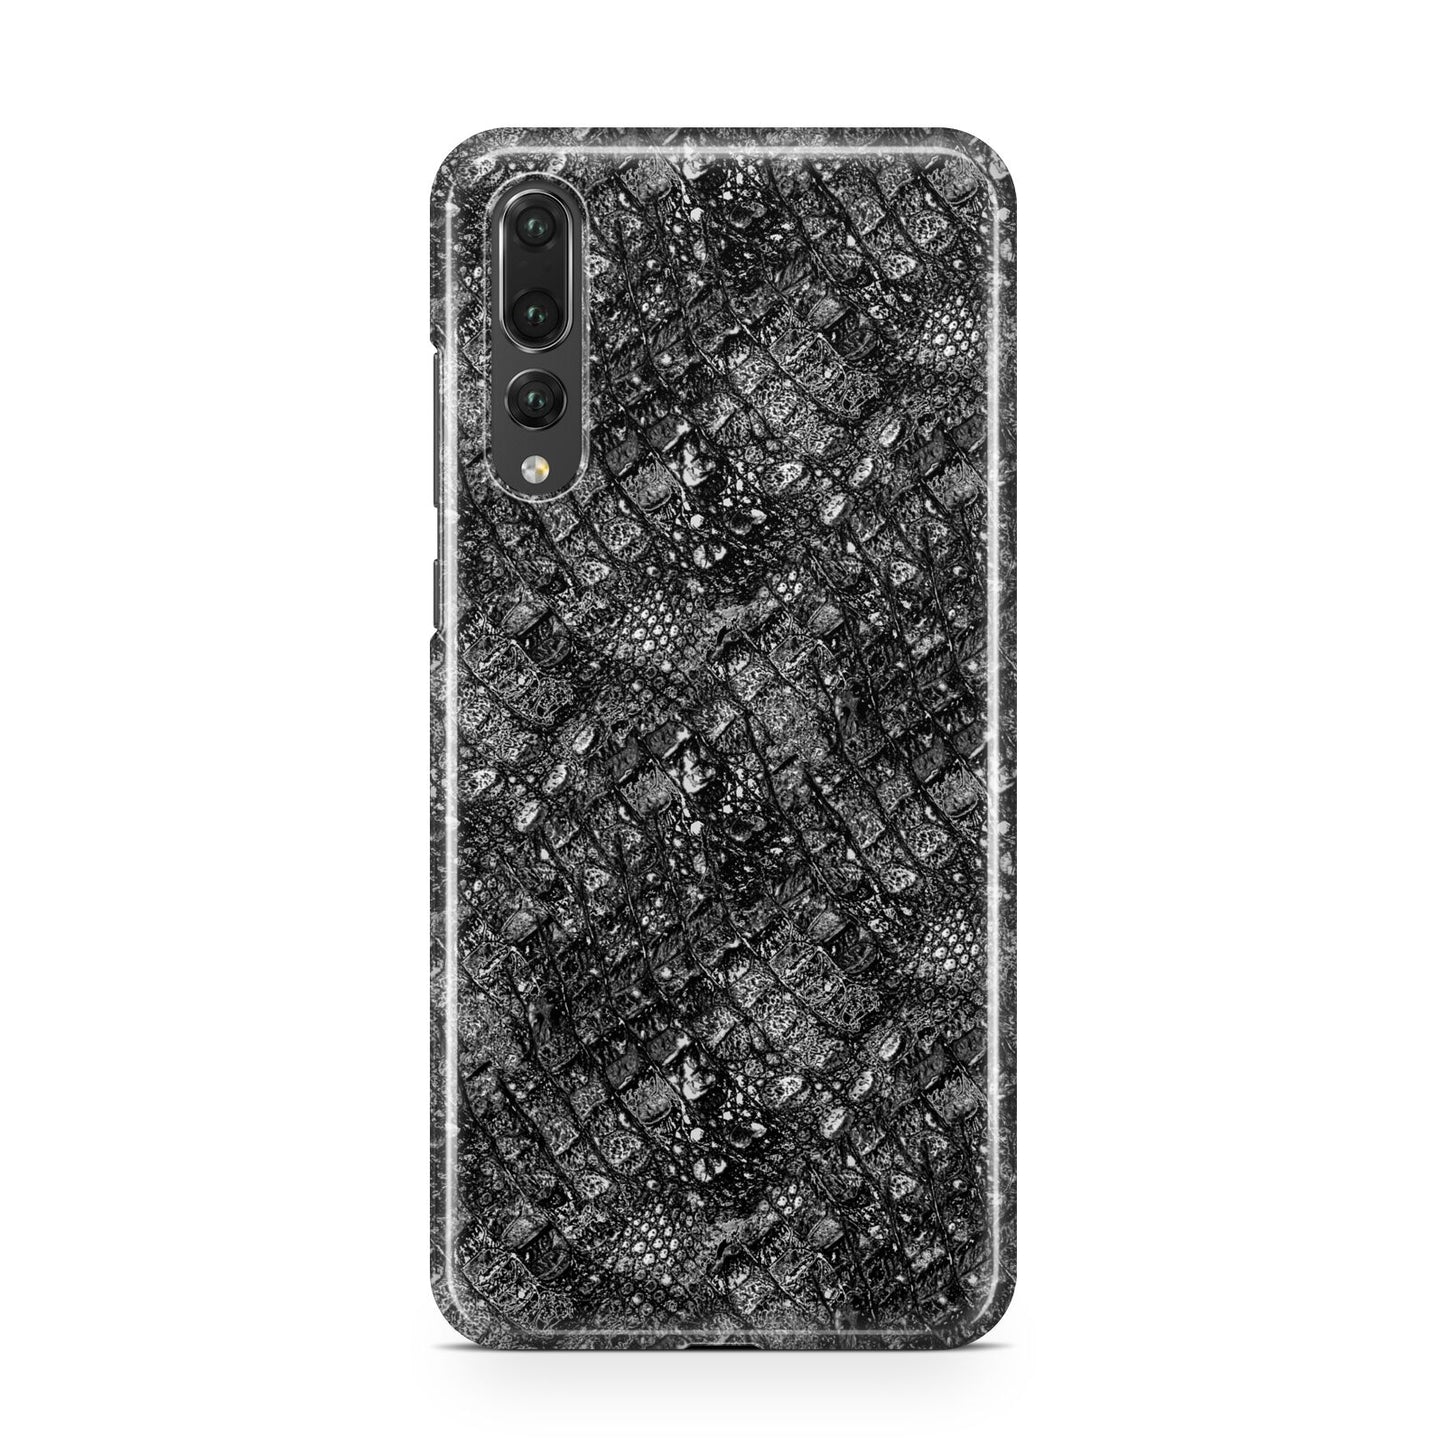 Snakeskin Design Huawei P20 Pro Phone Case